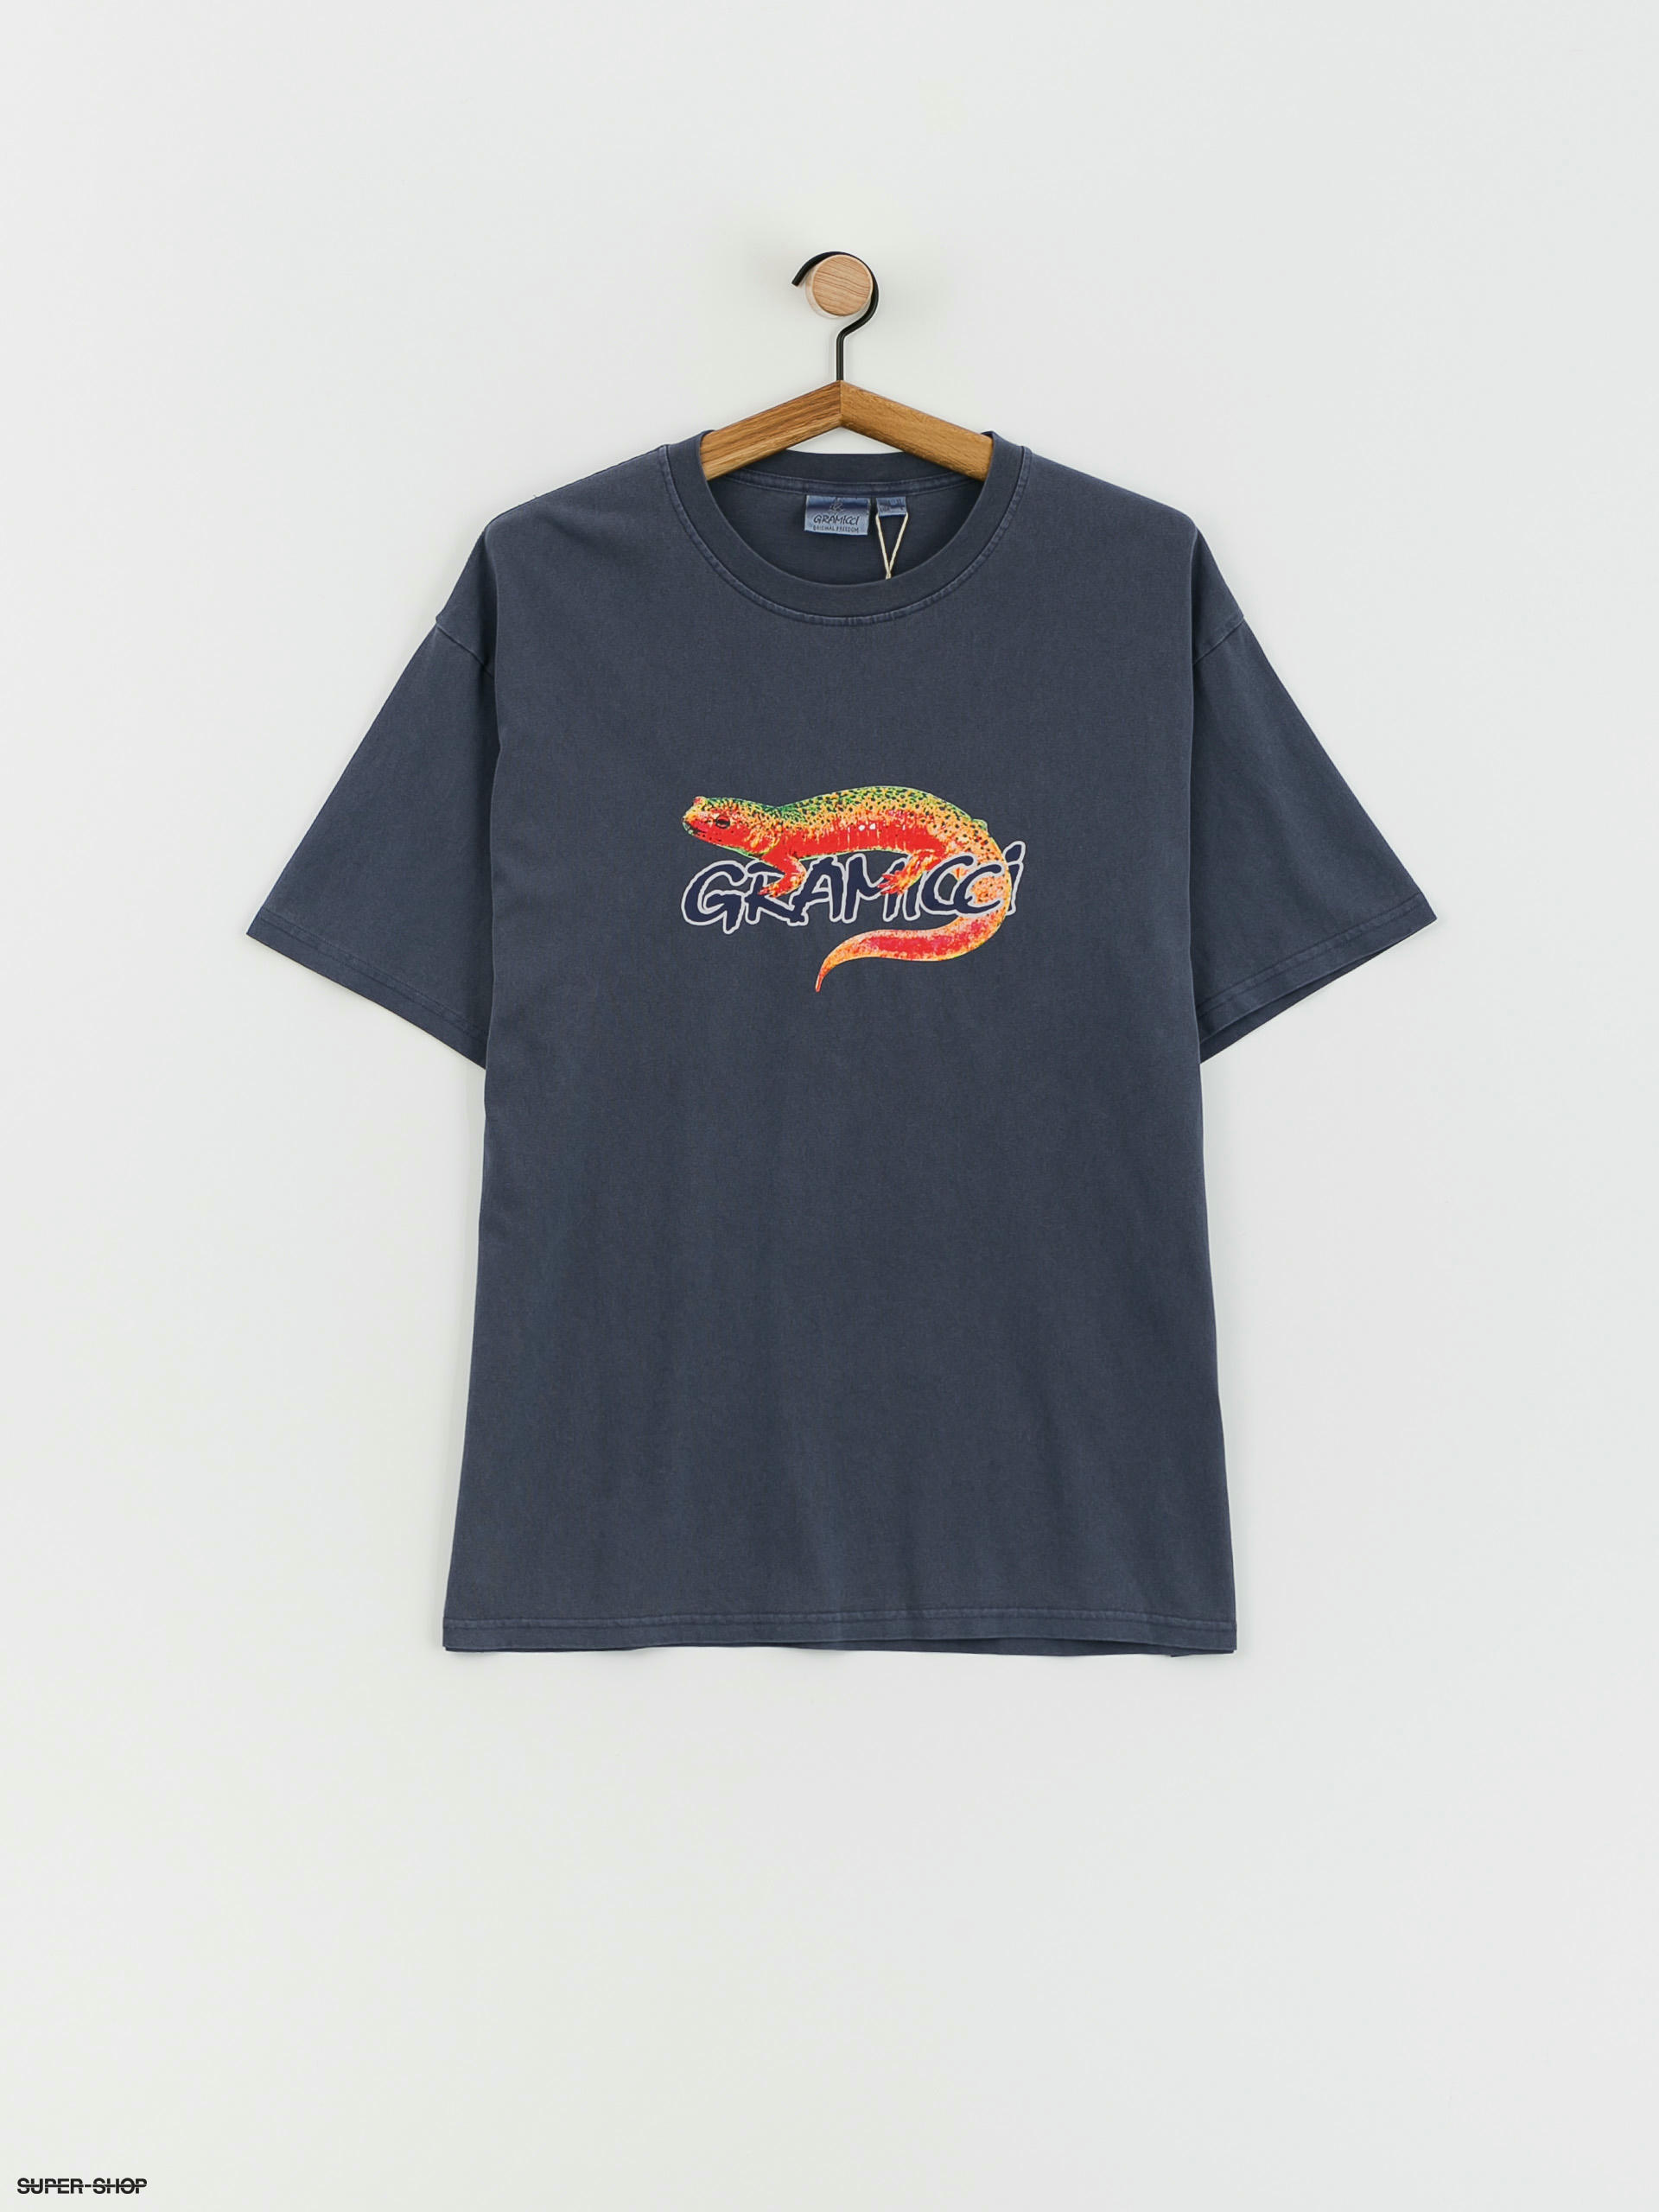 Salamander Shirts Ltd Sizing and Colour